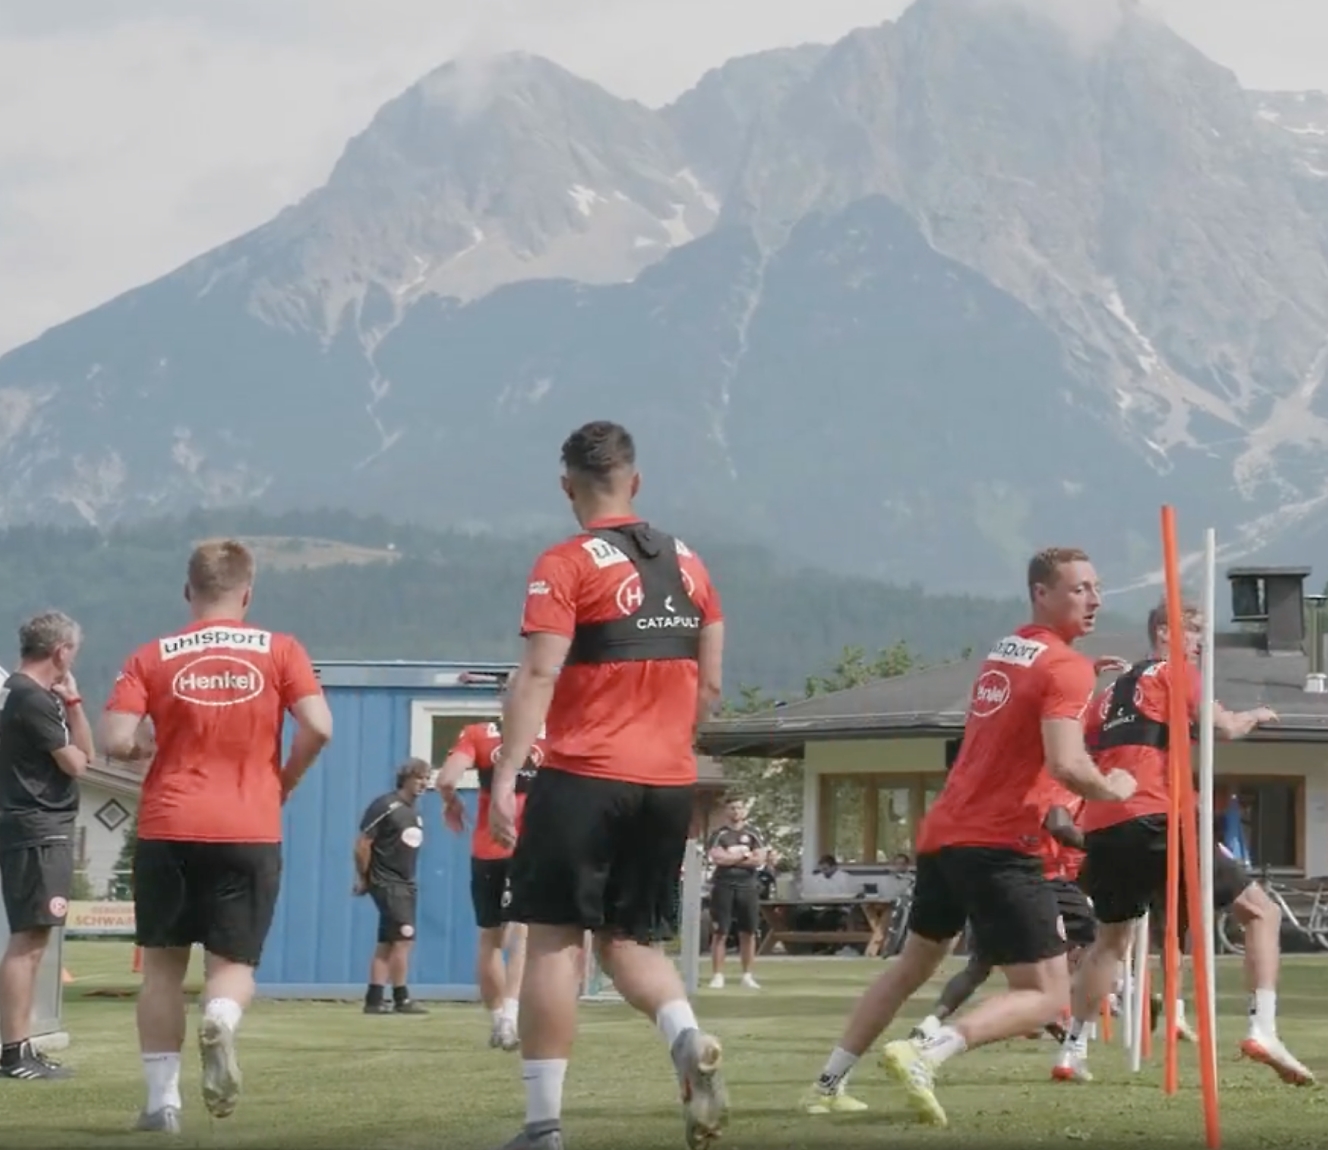 Jogadores de futebol com camisolas vermelhas a treinar ao ar livre, com montanhas visíveis em fundo.